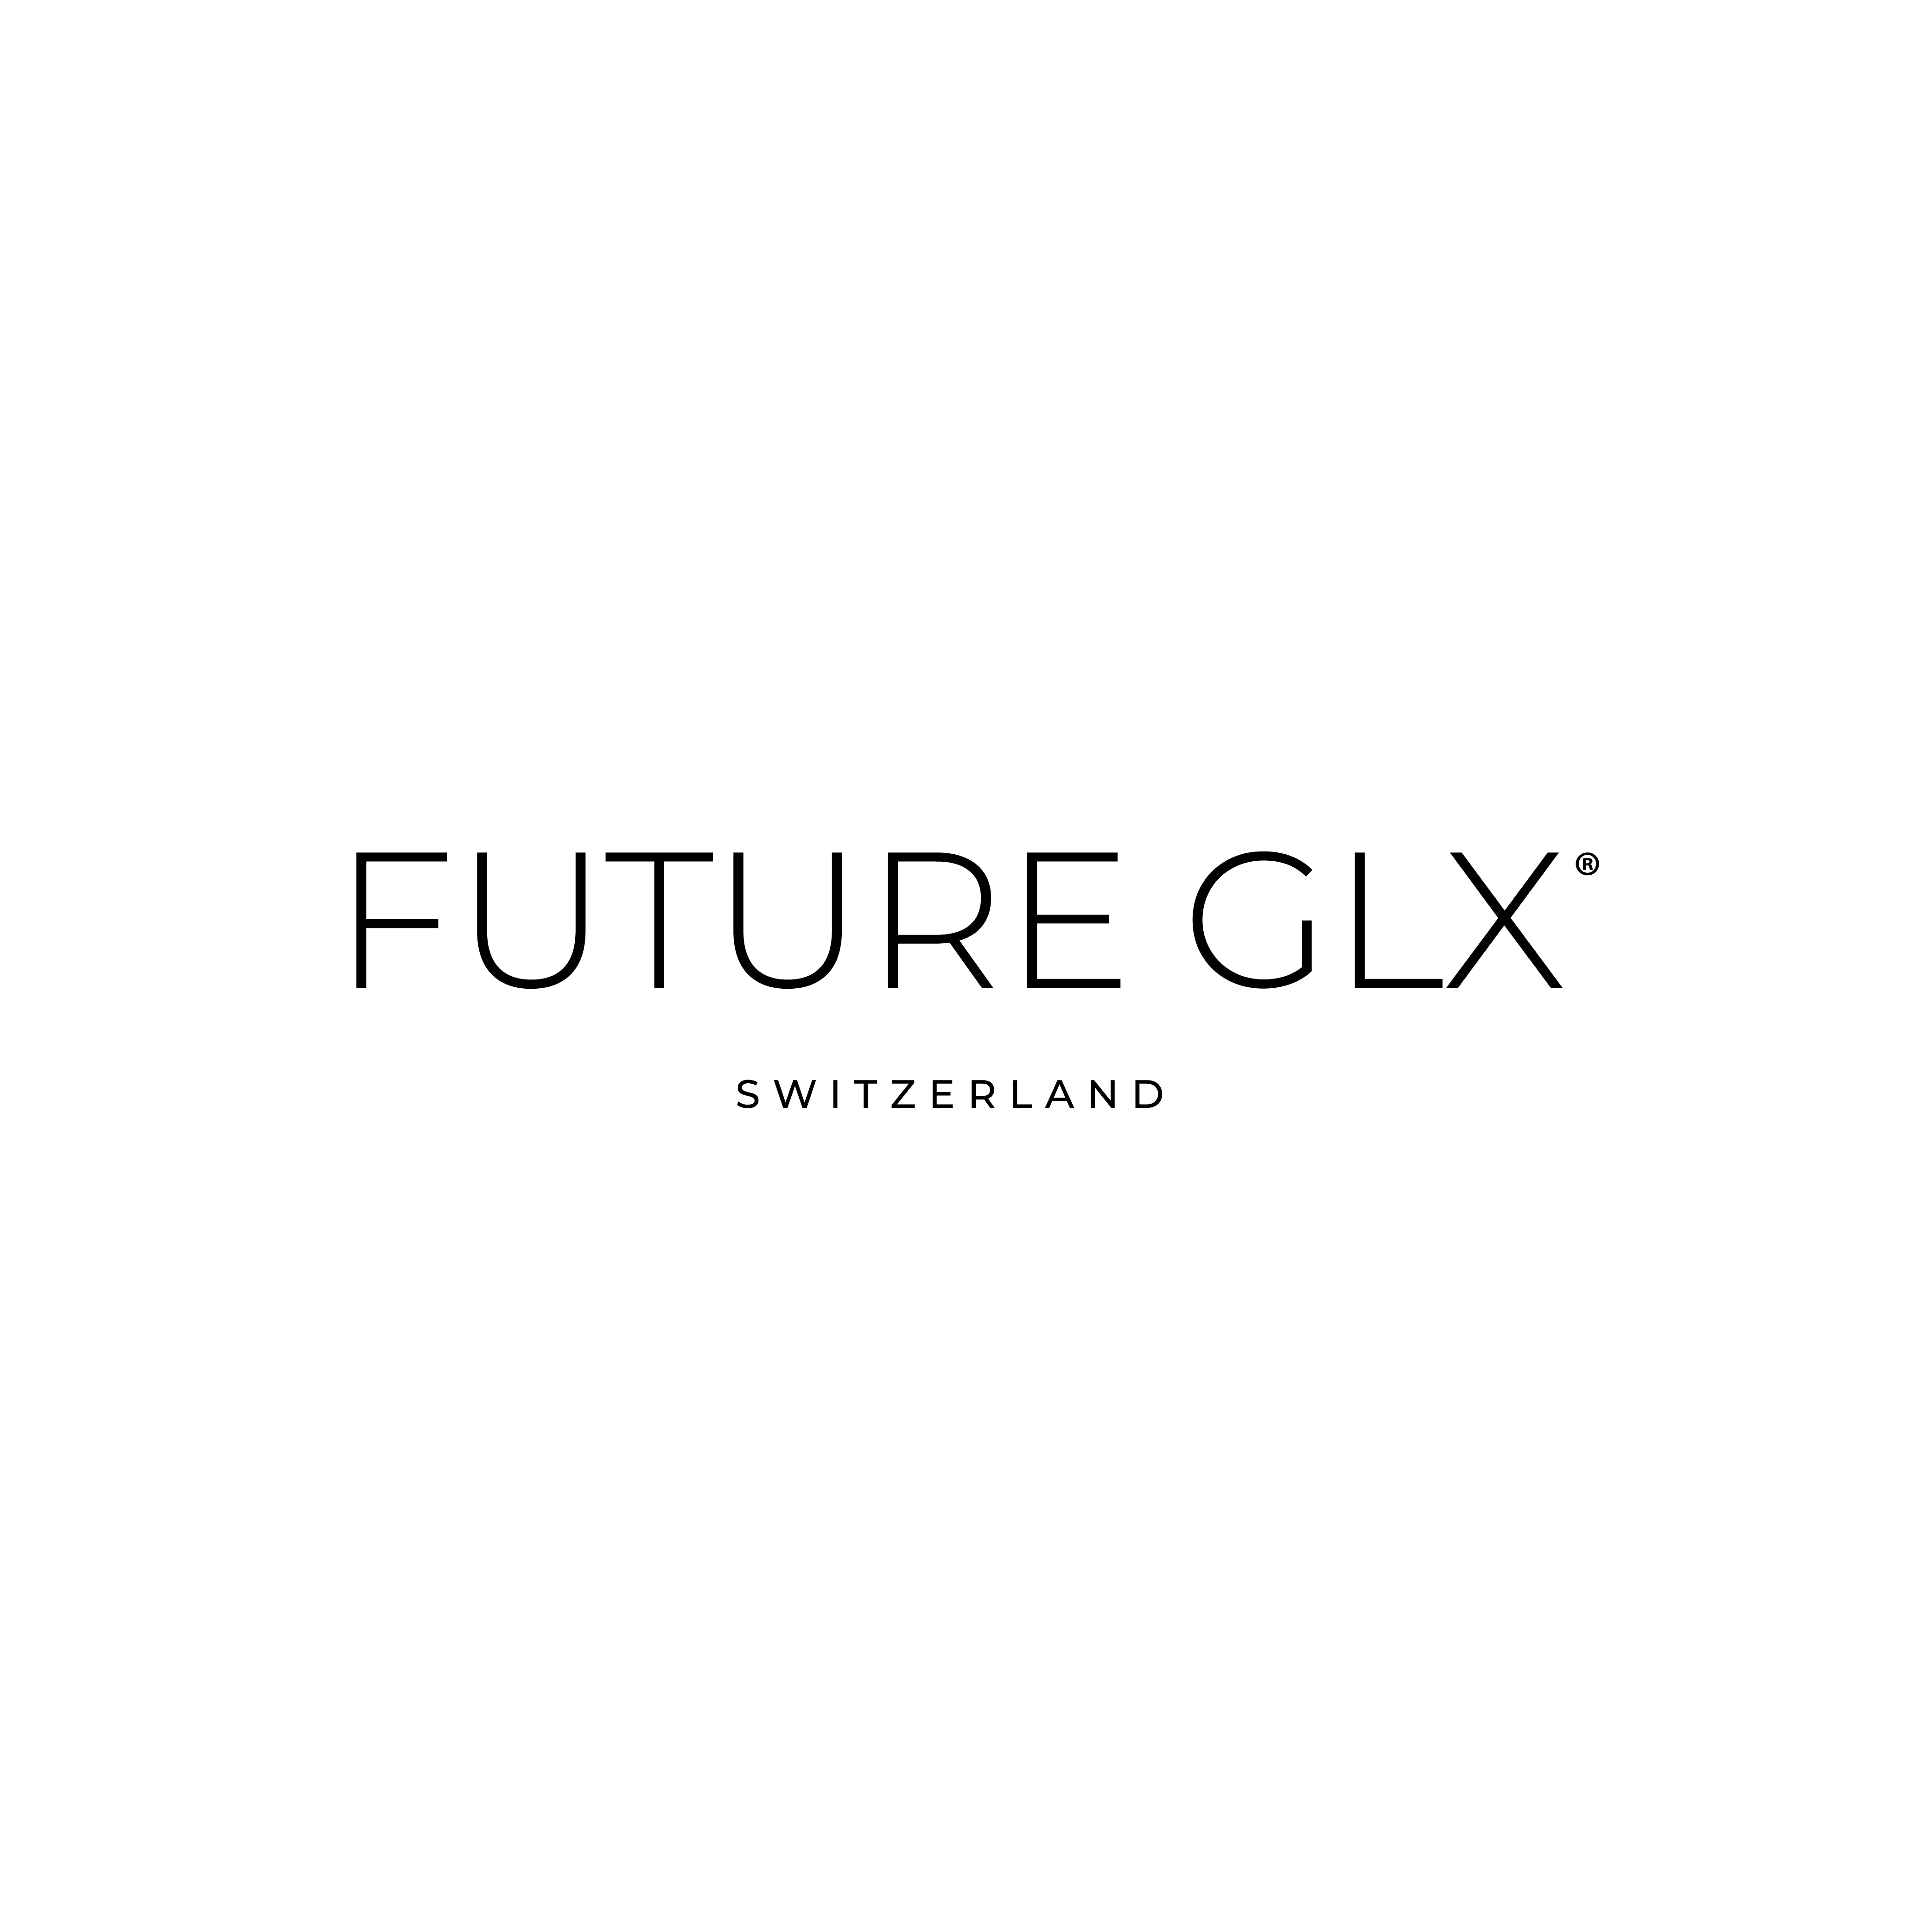 FUTURE GLX, Inh. Calcagno